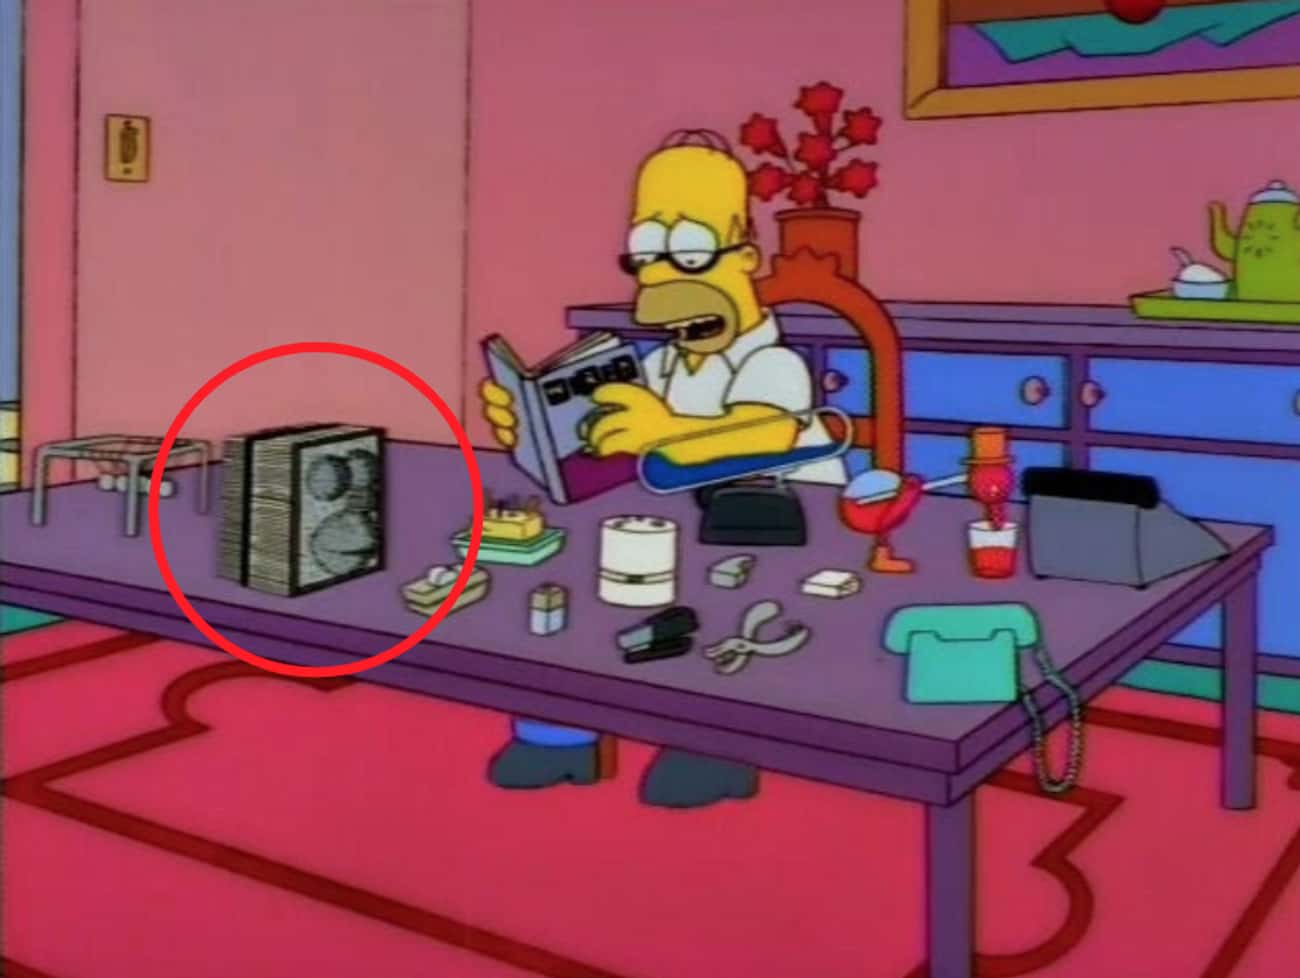 9 Detalles Ocultos de Los Simpsons que se siguen encontrando hasta ahora